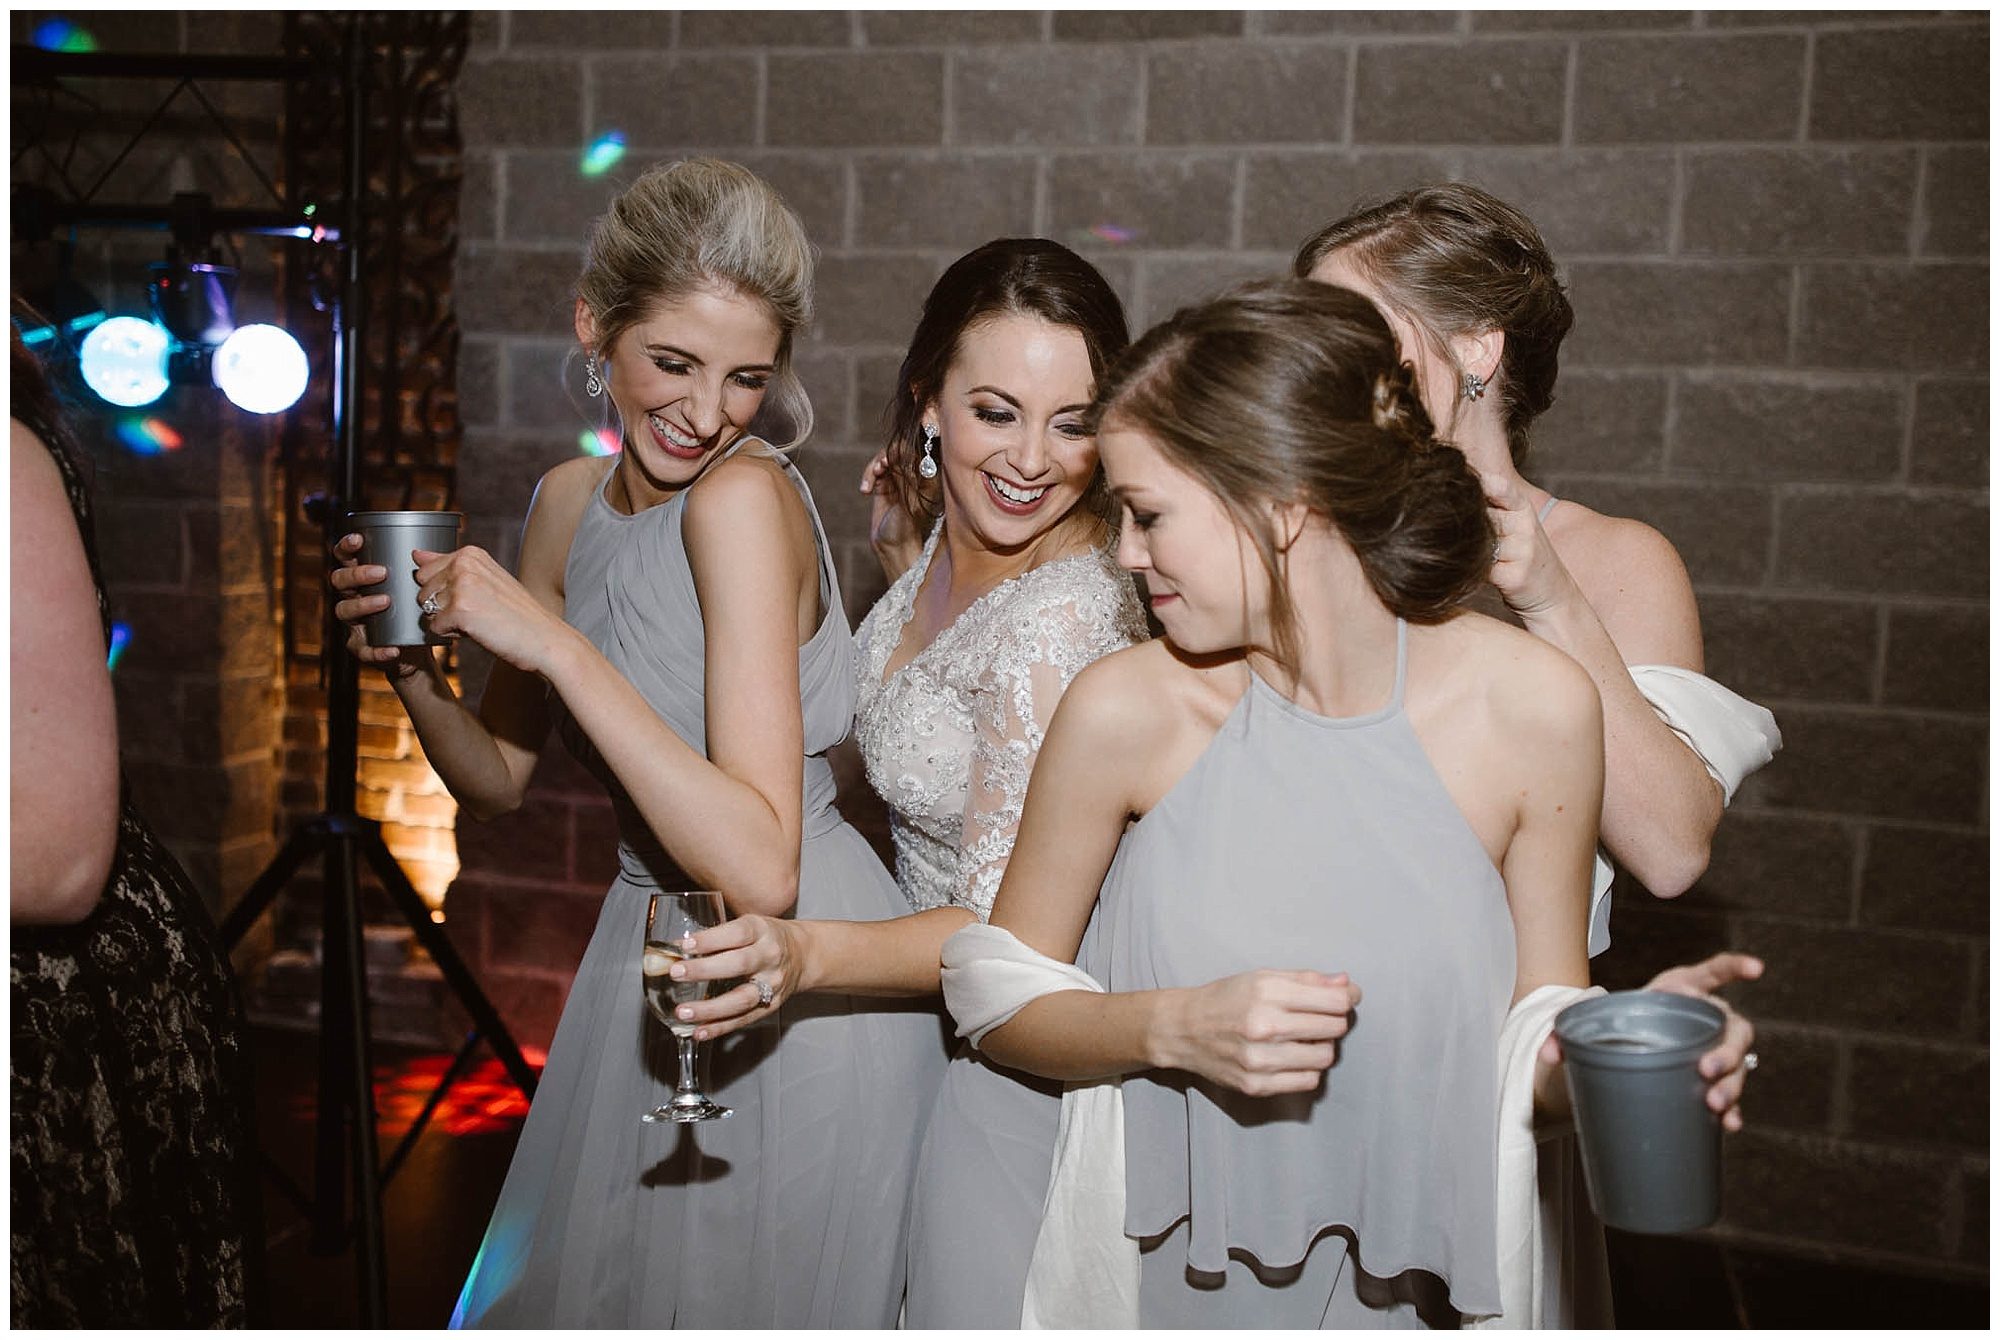 bride dancing with bridesmaids at wedding reception